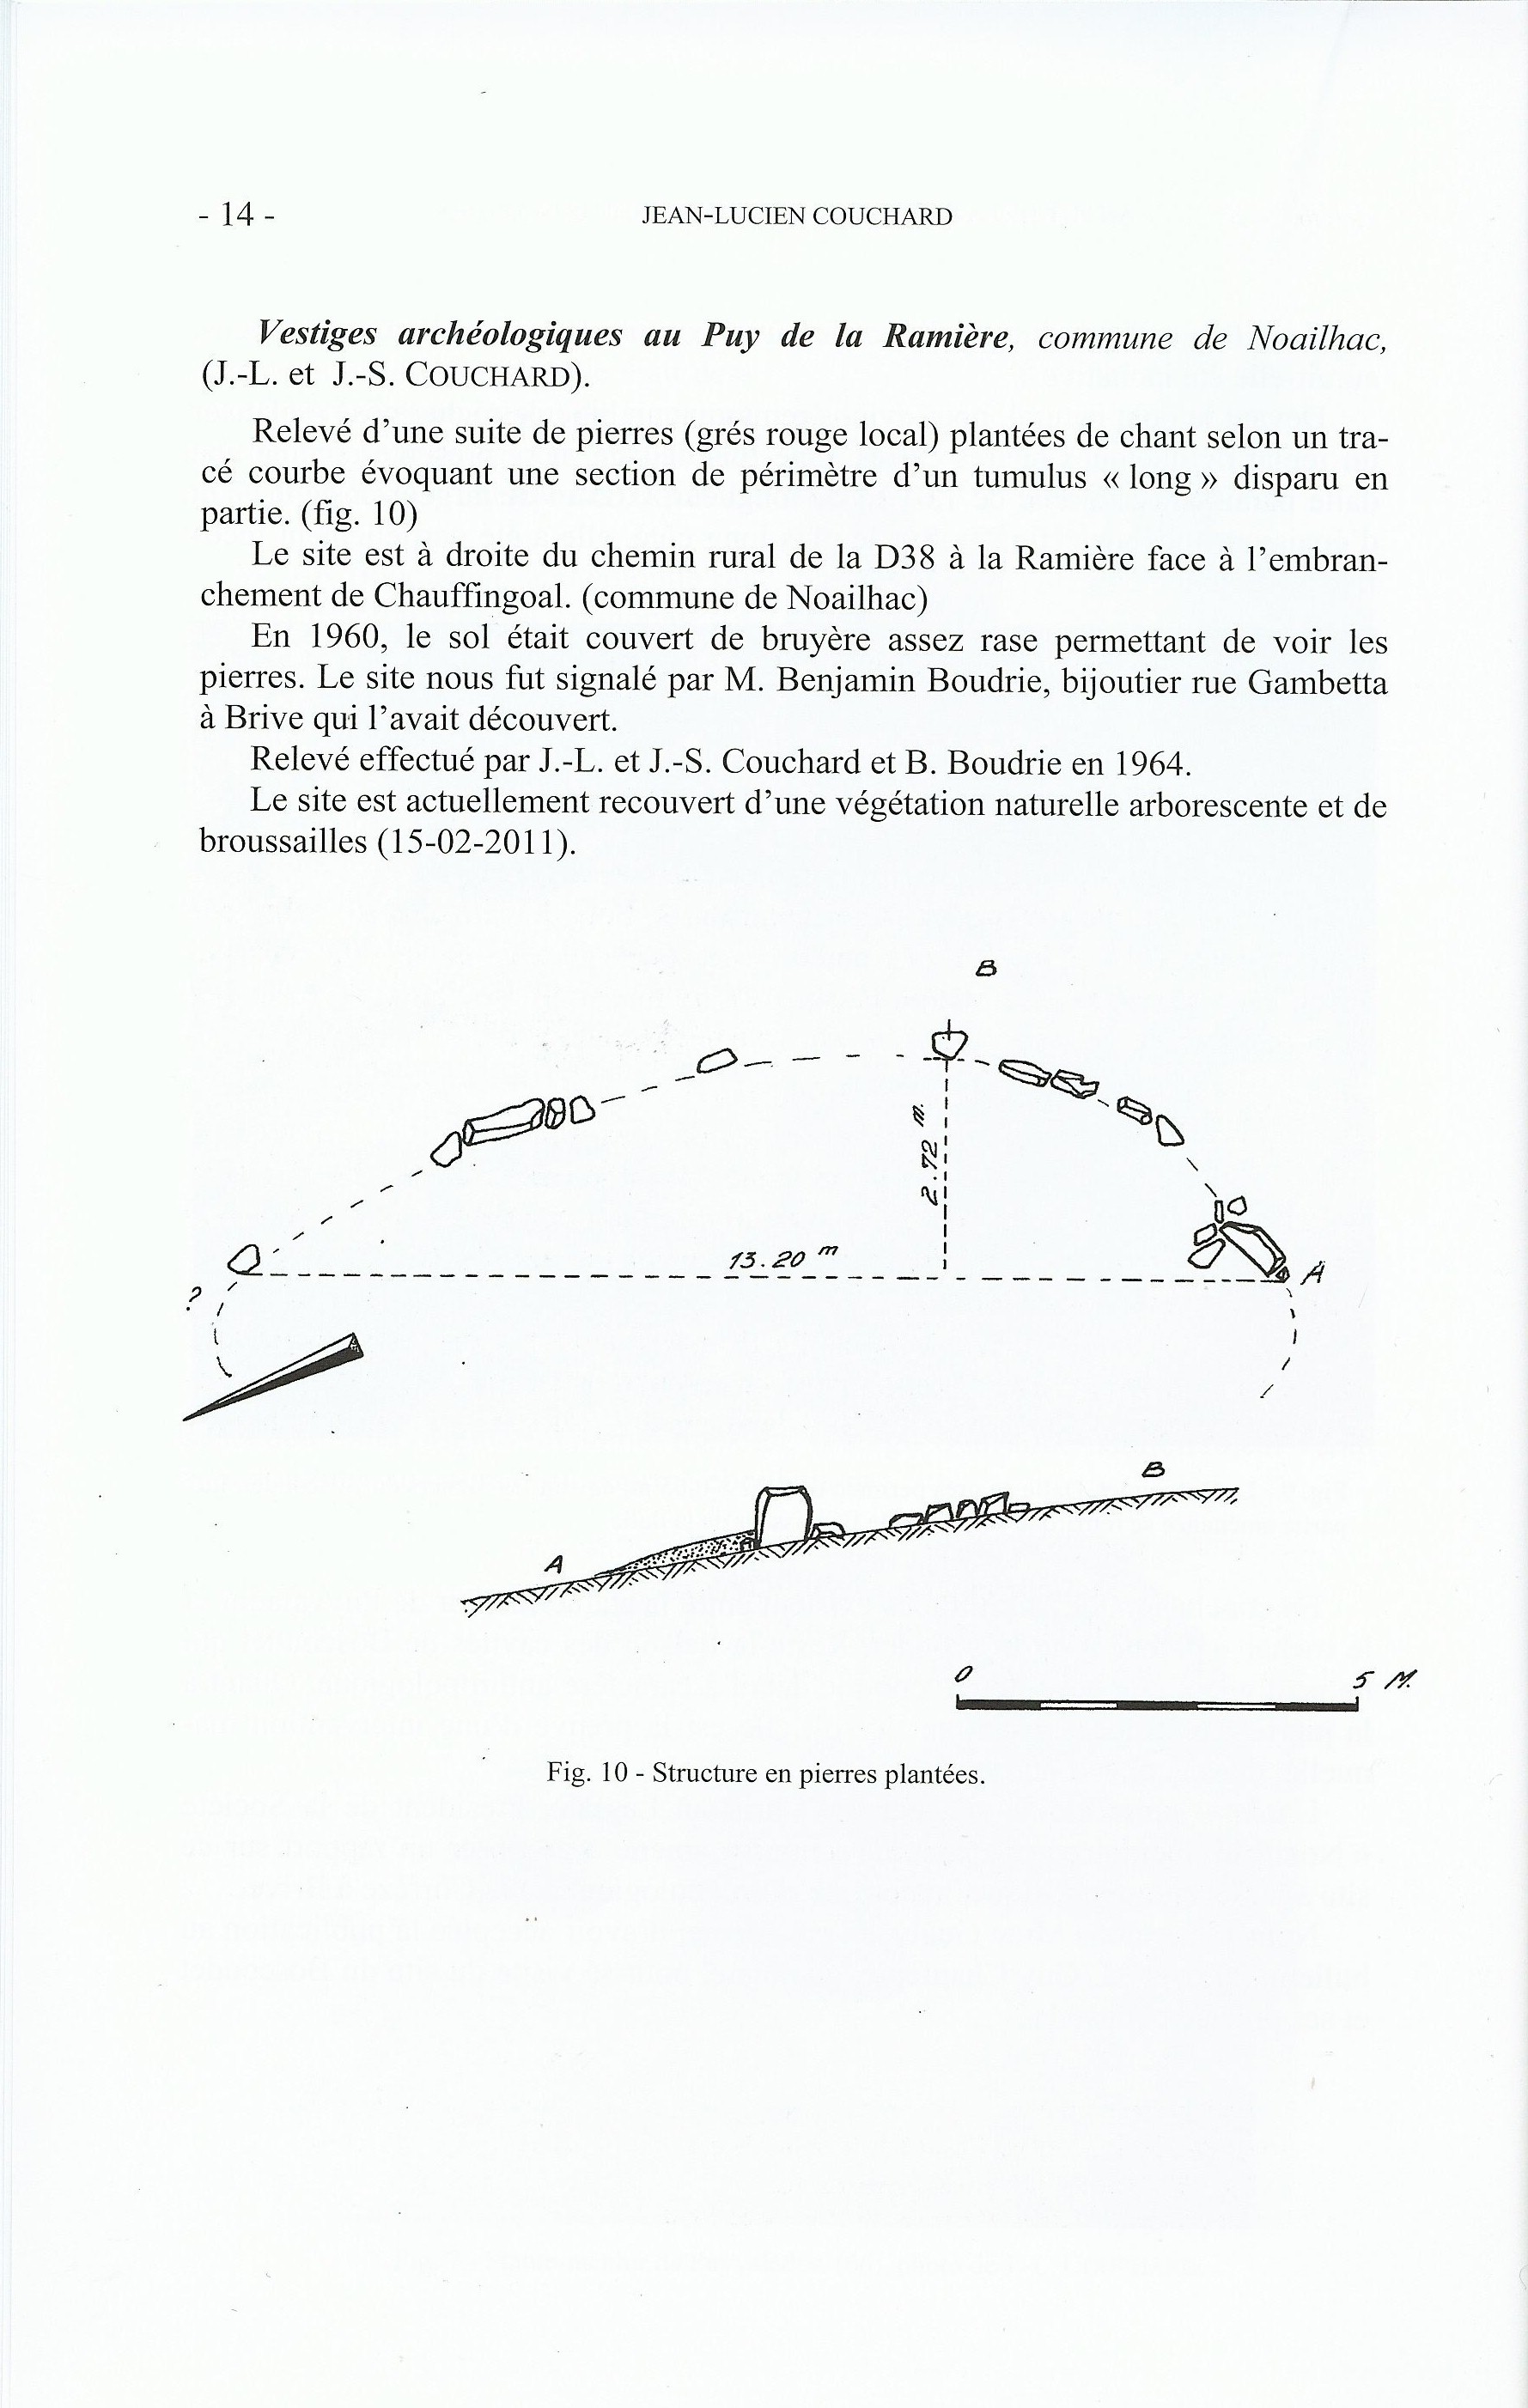 Autres vestiges archéologiques au Puy de la Ramière